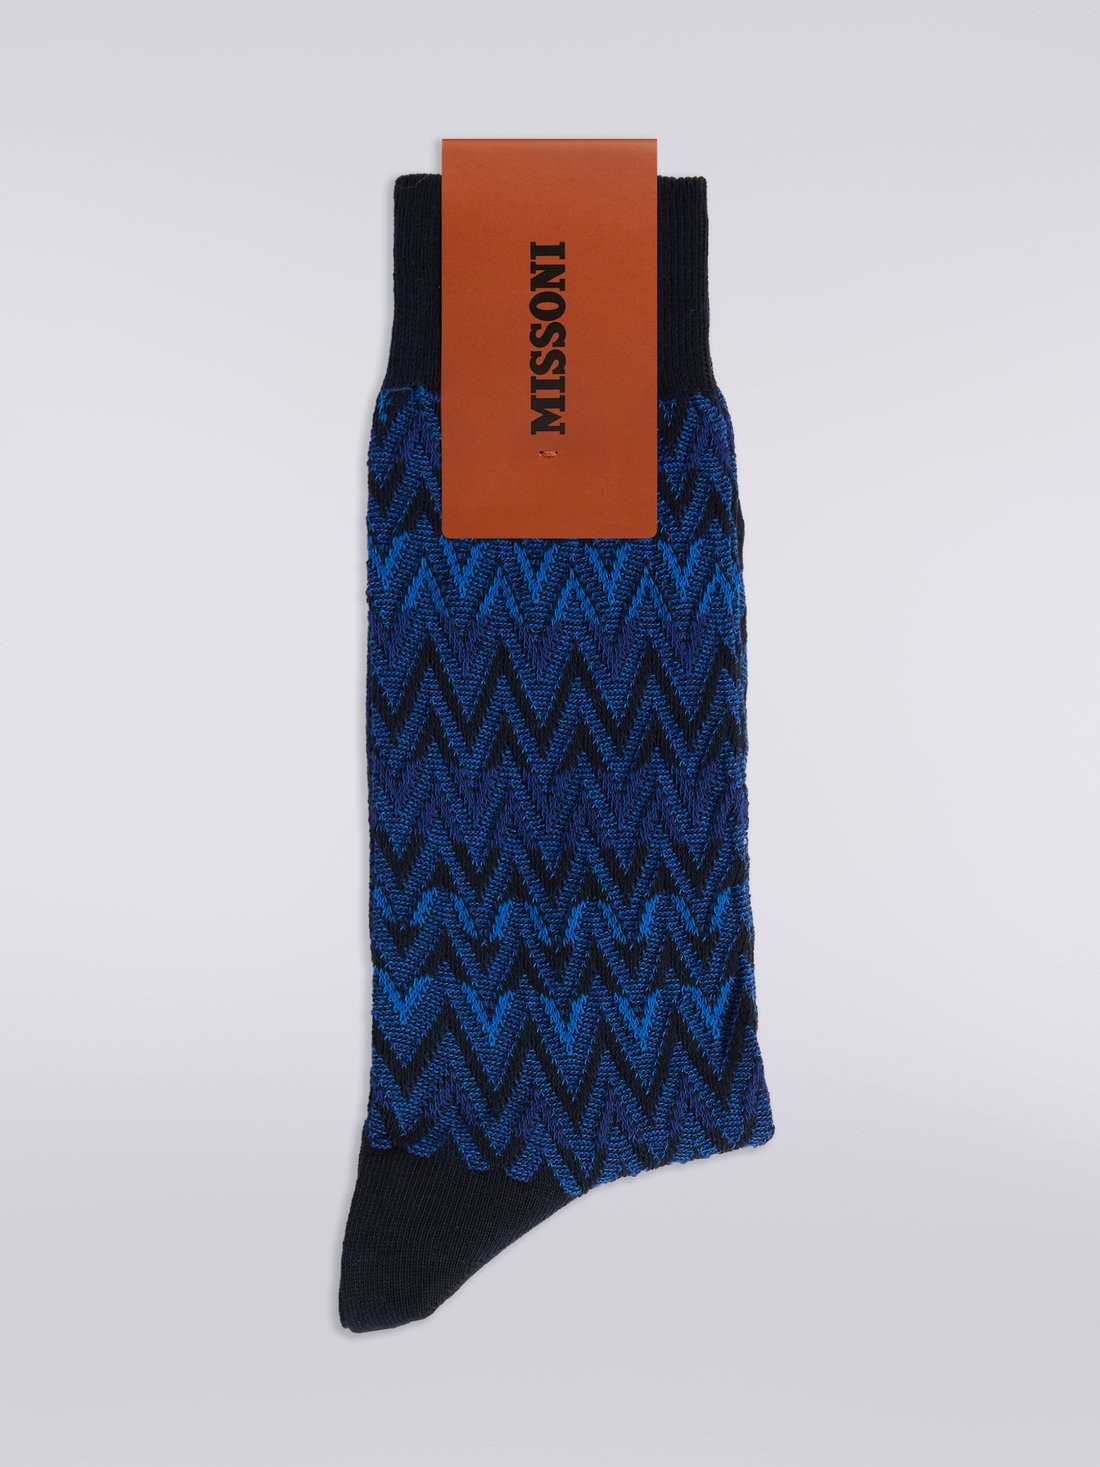 Socken aus Baumwollmischgewebe mit Chevronmuster, Mehrfarbig  - LS23WS21BV00EMSM67R - 1